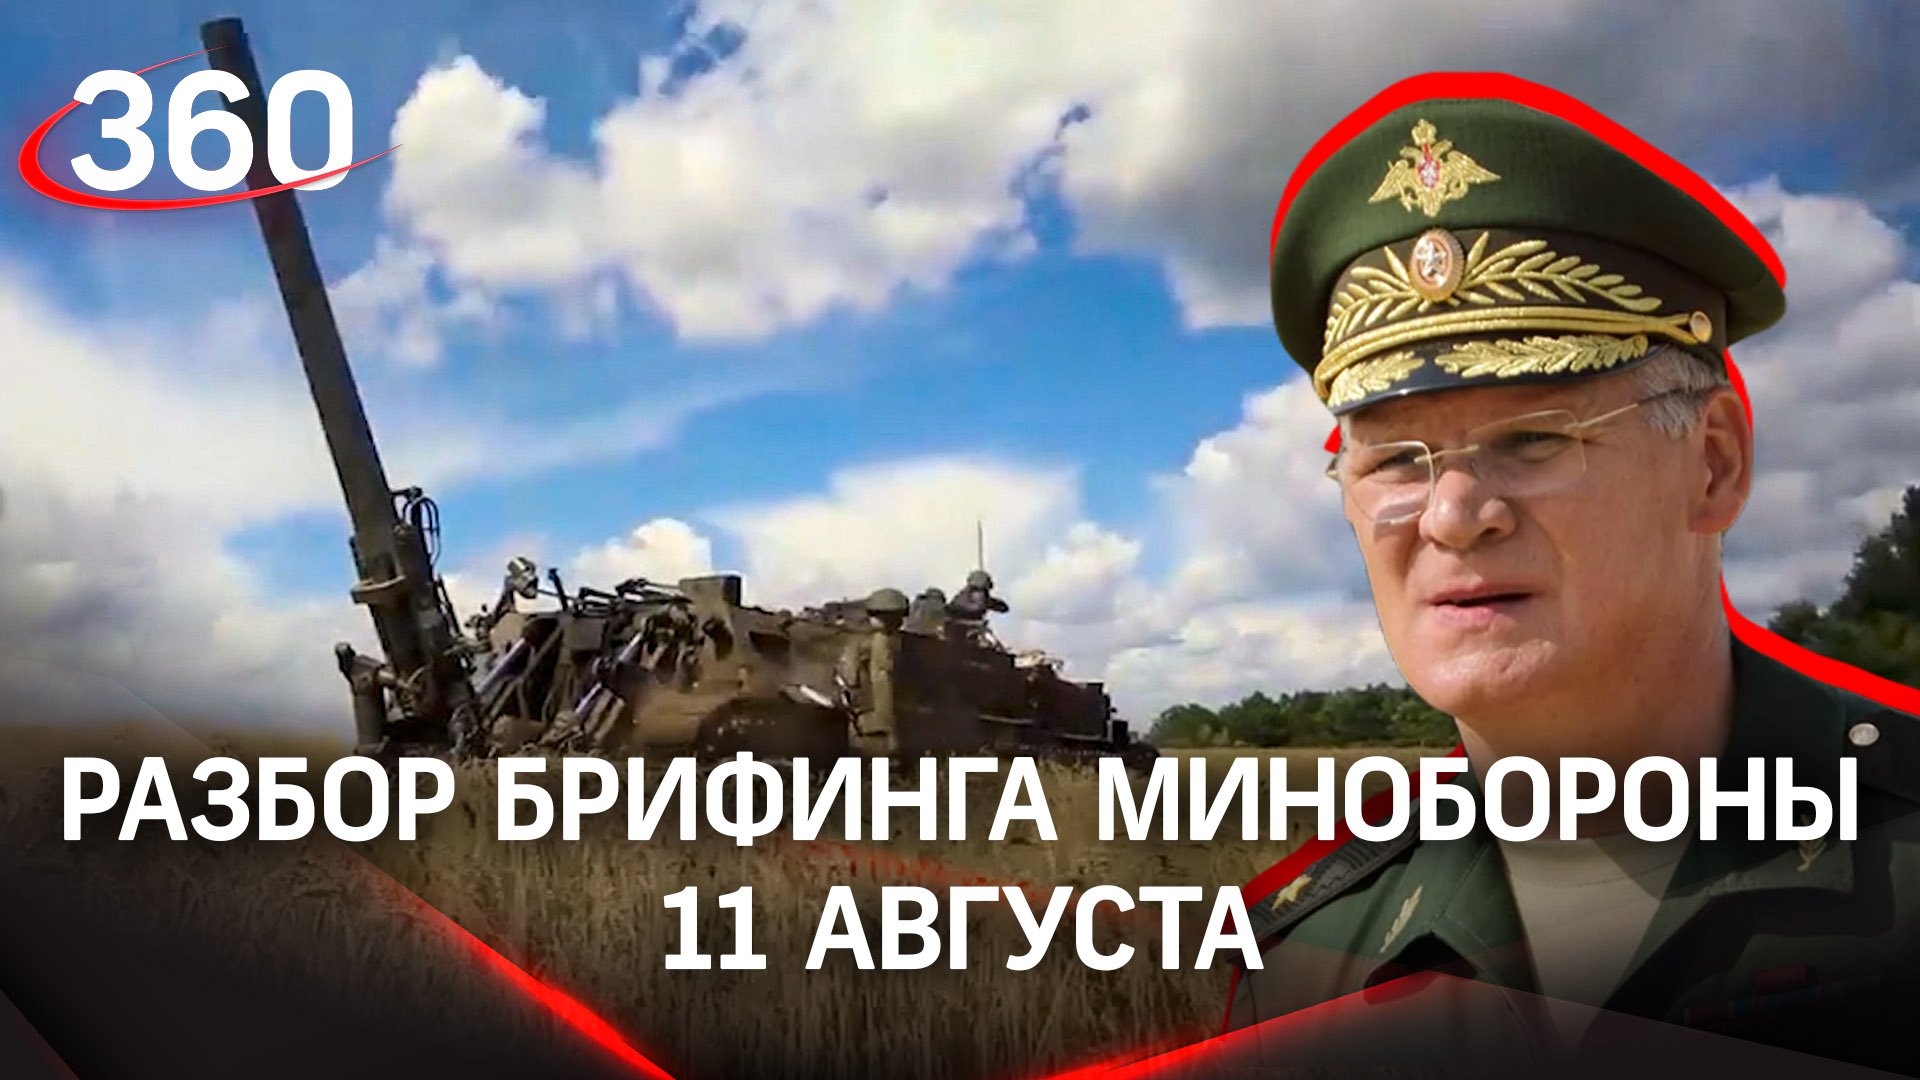 Успех ВС РФ в Песках - удалось подавить обстрелы жителей Донецка. Разбор брифинга